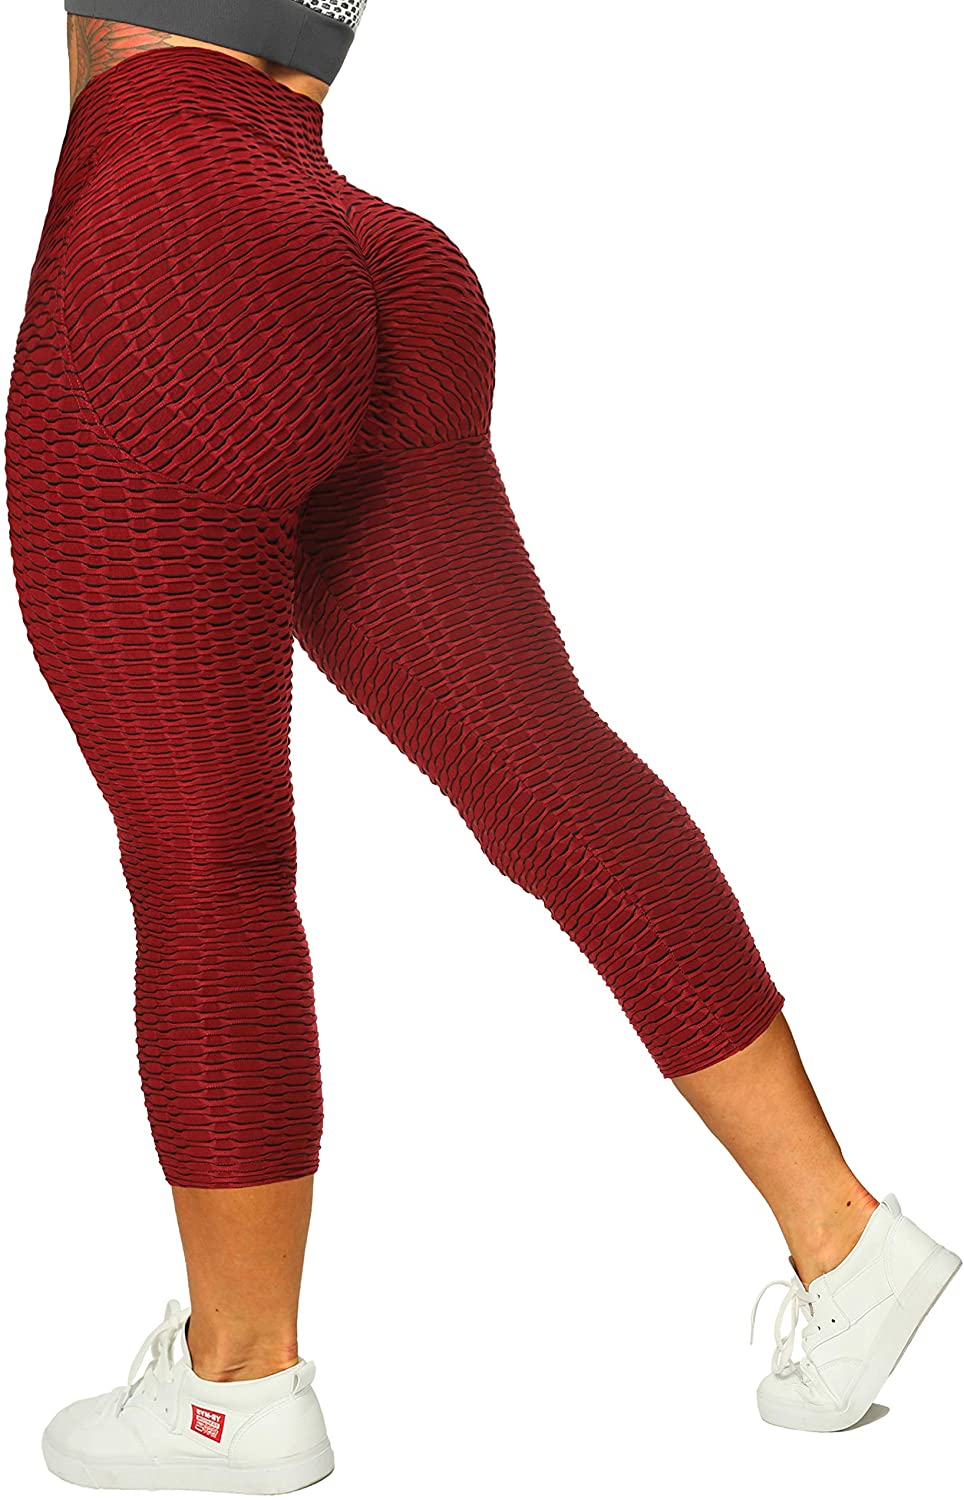 Red on Black Capri Leggings for Women Butt Lift Yoga Pants for Women Tummy  Control Leggings High Waisted – Fire Fit Designs